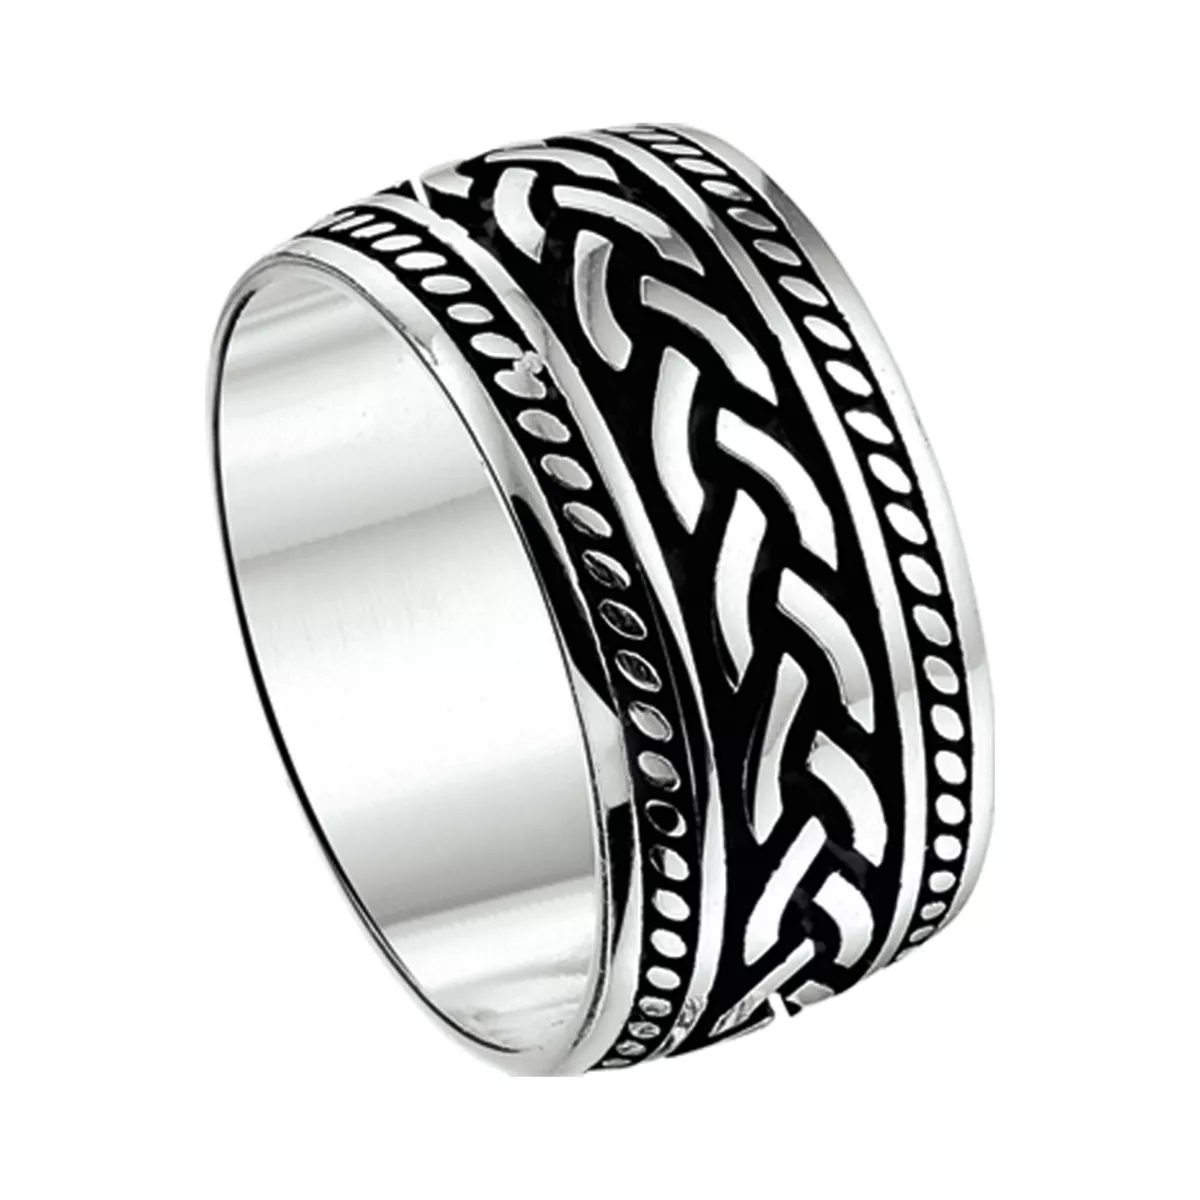 Ring zilver met emaille zilverkleurig-zwart 10,5 mm breed